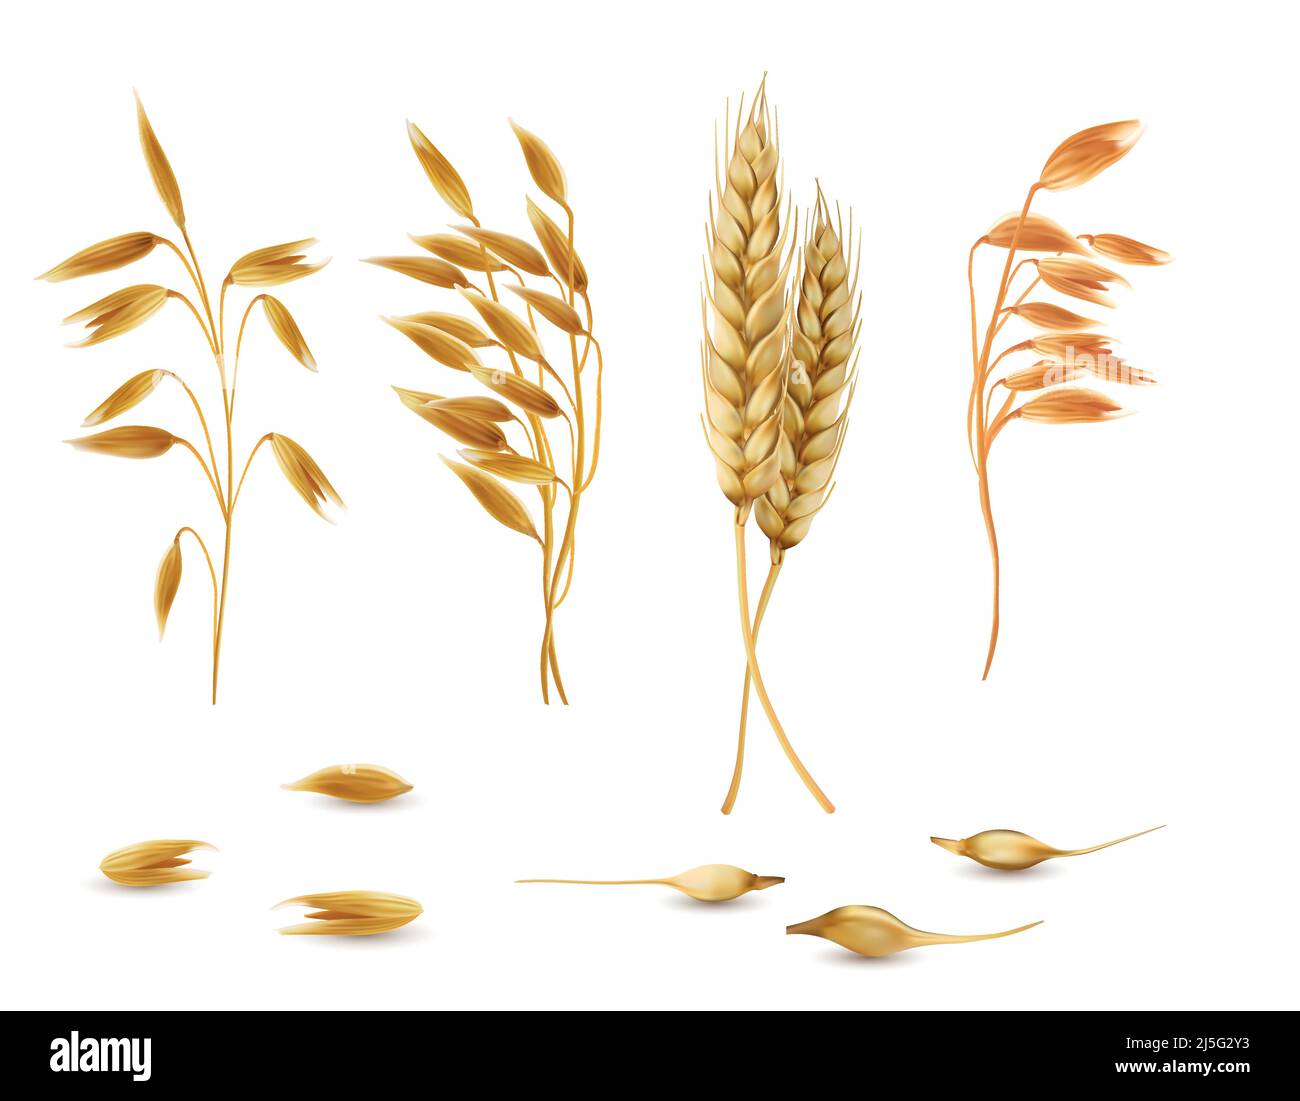 Vector realistische Satz von Getreidepflanzen, Haferspikeletts, Gerstenohren, Weizen oder Roggen mit Körnern isoliert auf dem Hintergrund. Landwirtschaft Ernte für ihn angebaut Stock Vektor